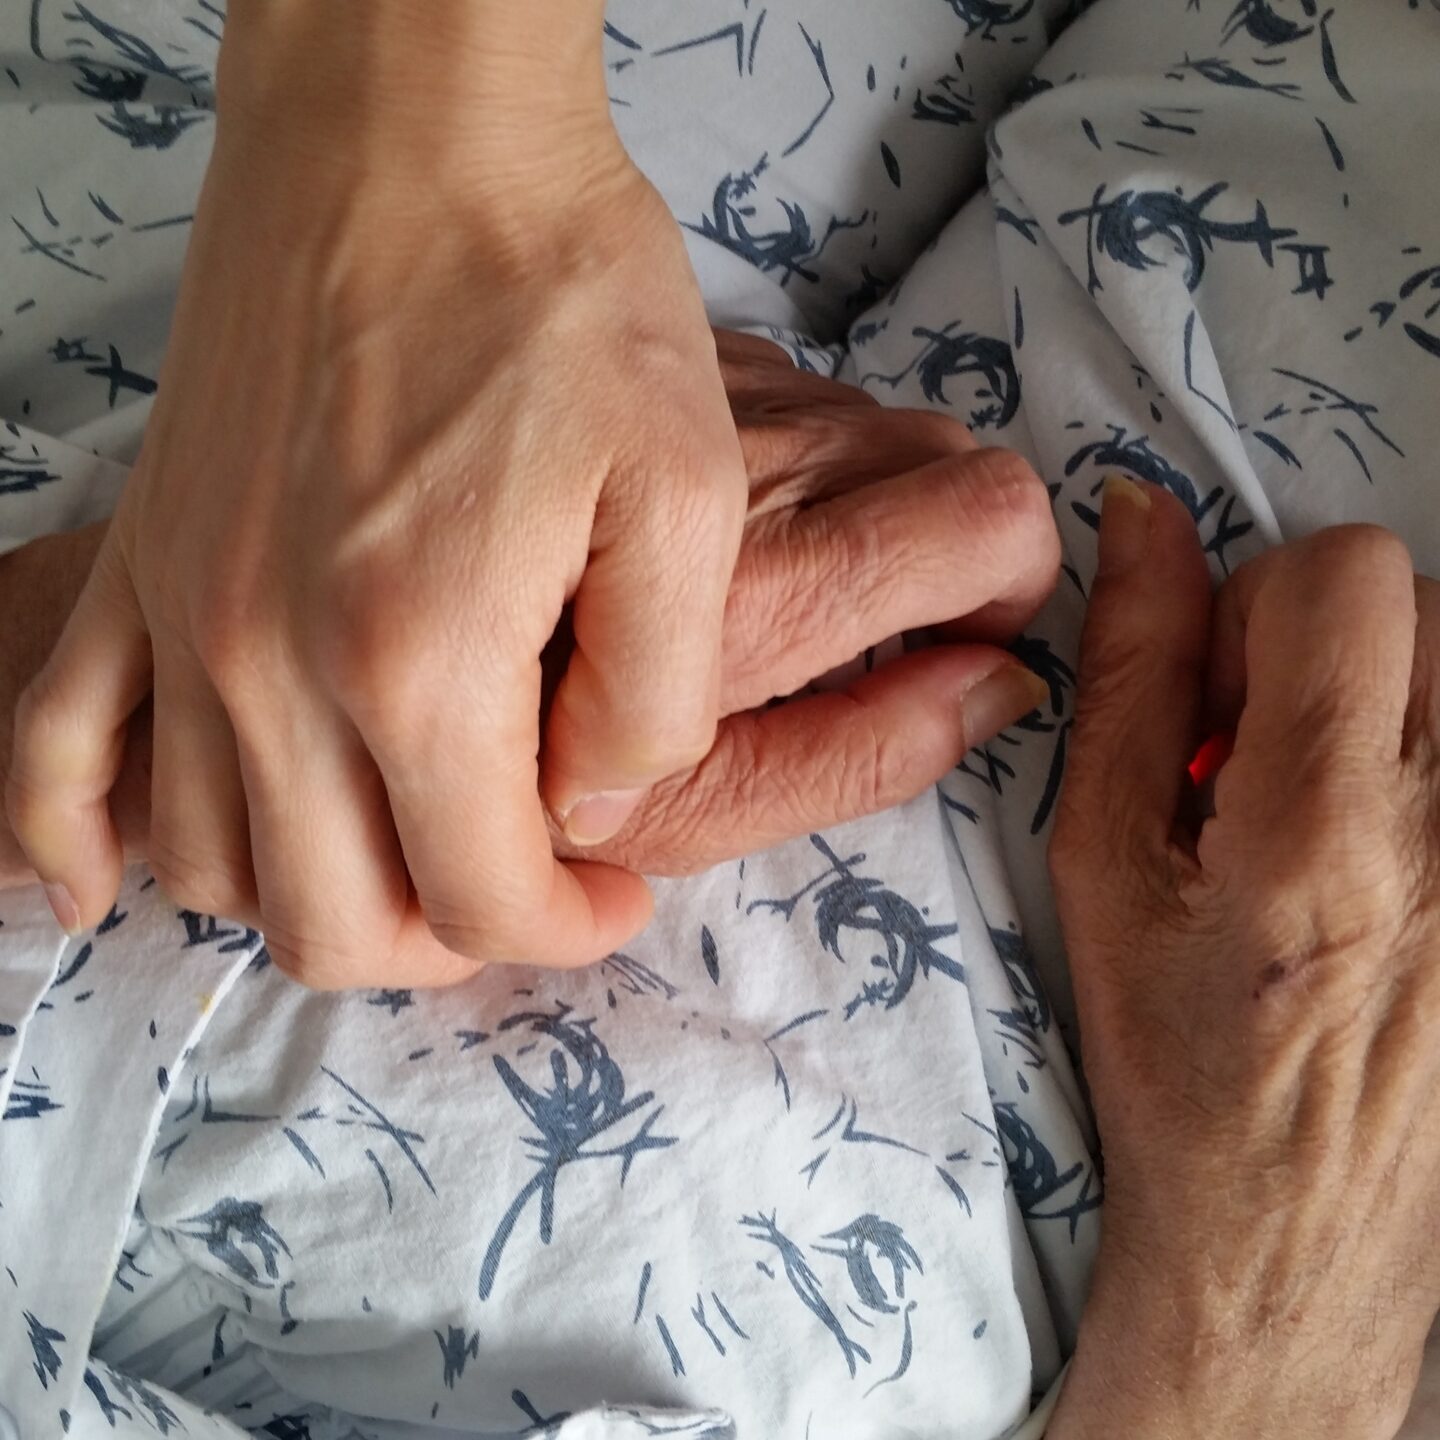 holding-elderly-family-member-s-hand-in-hospital-d-2021-08-29-01-23-24-utc